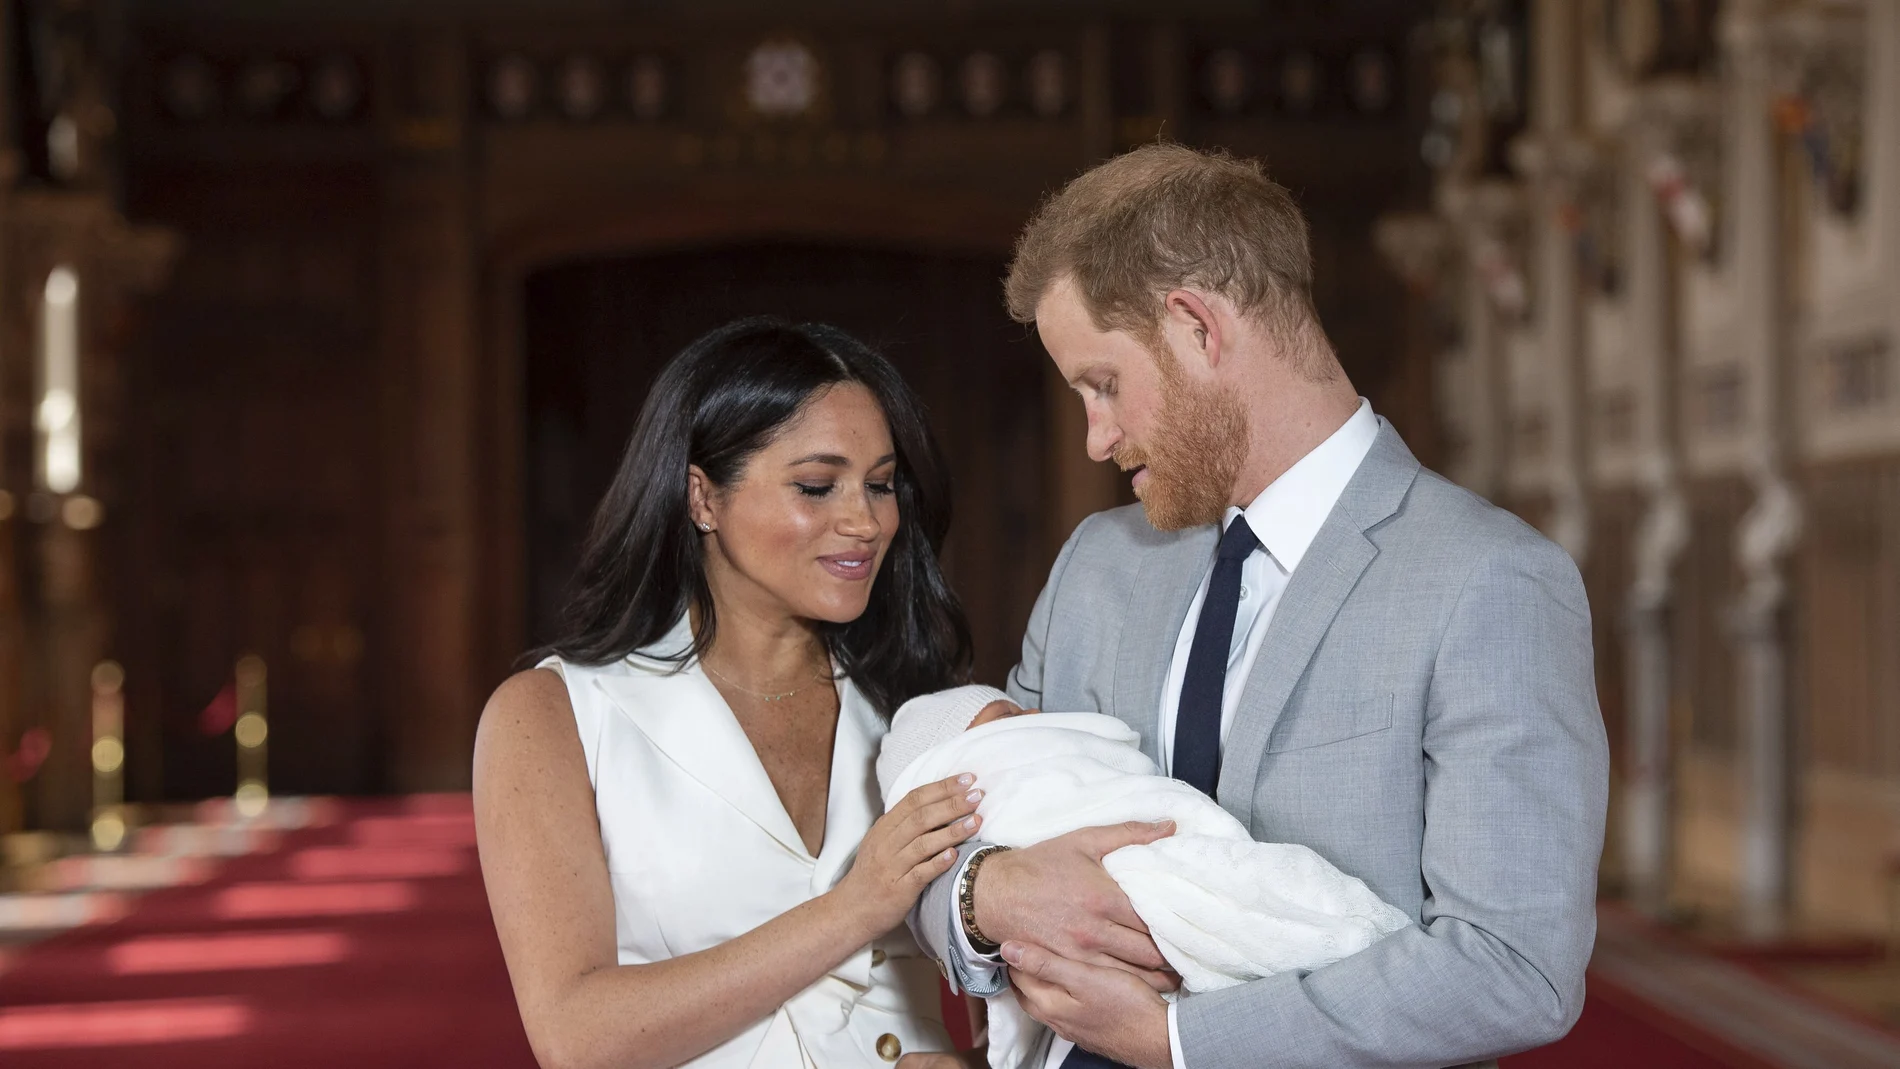 El príncipe Harry y Meghan Markle, el día de la presentación oficial de su primer hijo. (Dominic Lipinski/Pool via AP, File)